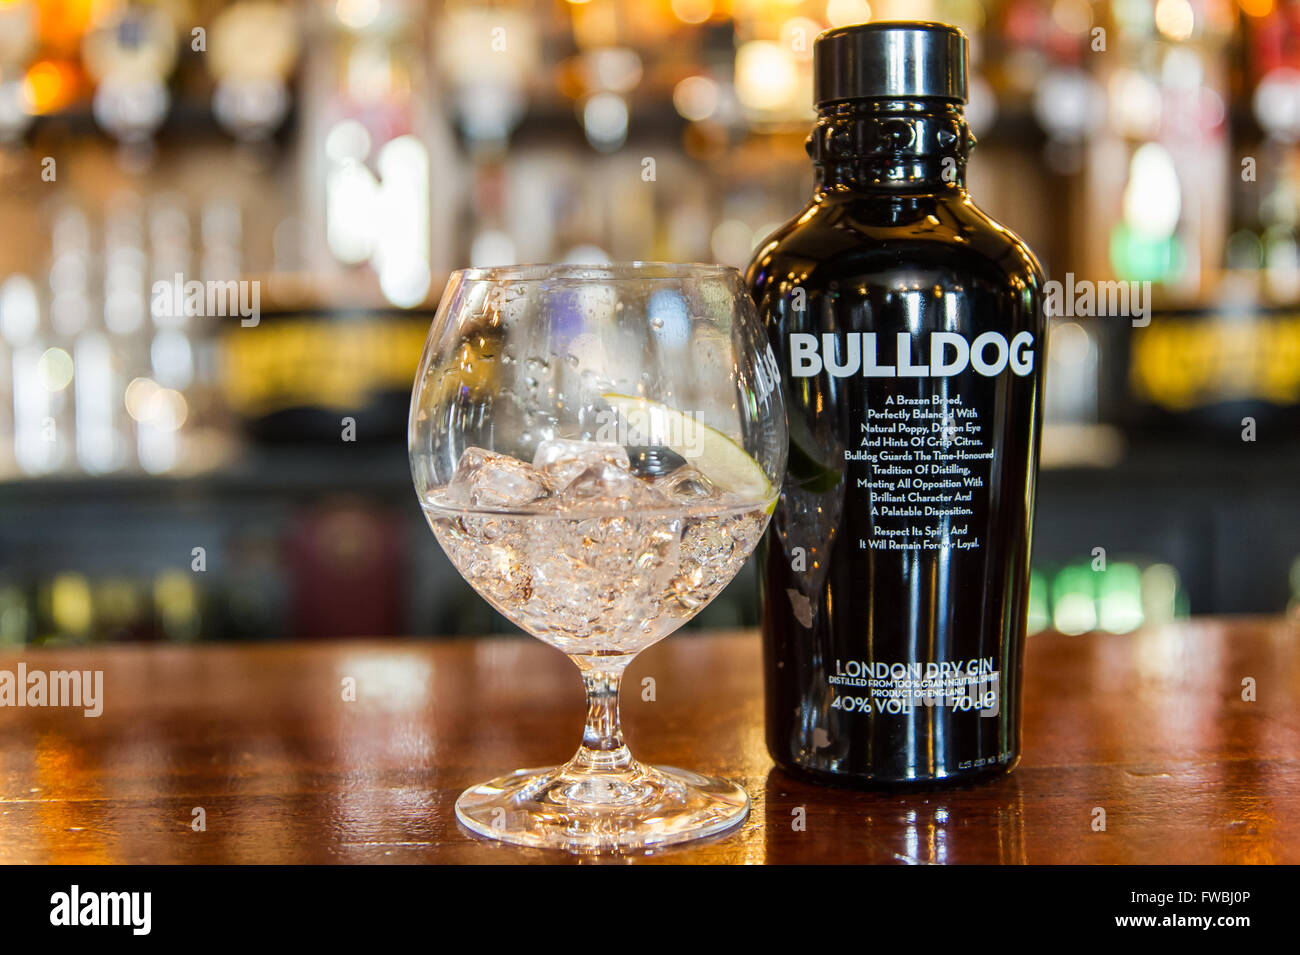 Eine Flasche Bulldog London Dry Gin und ein Glas Gin mit Eiswürfeln und Kalk auf einen Balken Zähler oben in Irland. Stockfoto